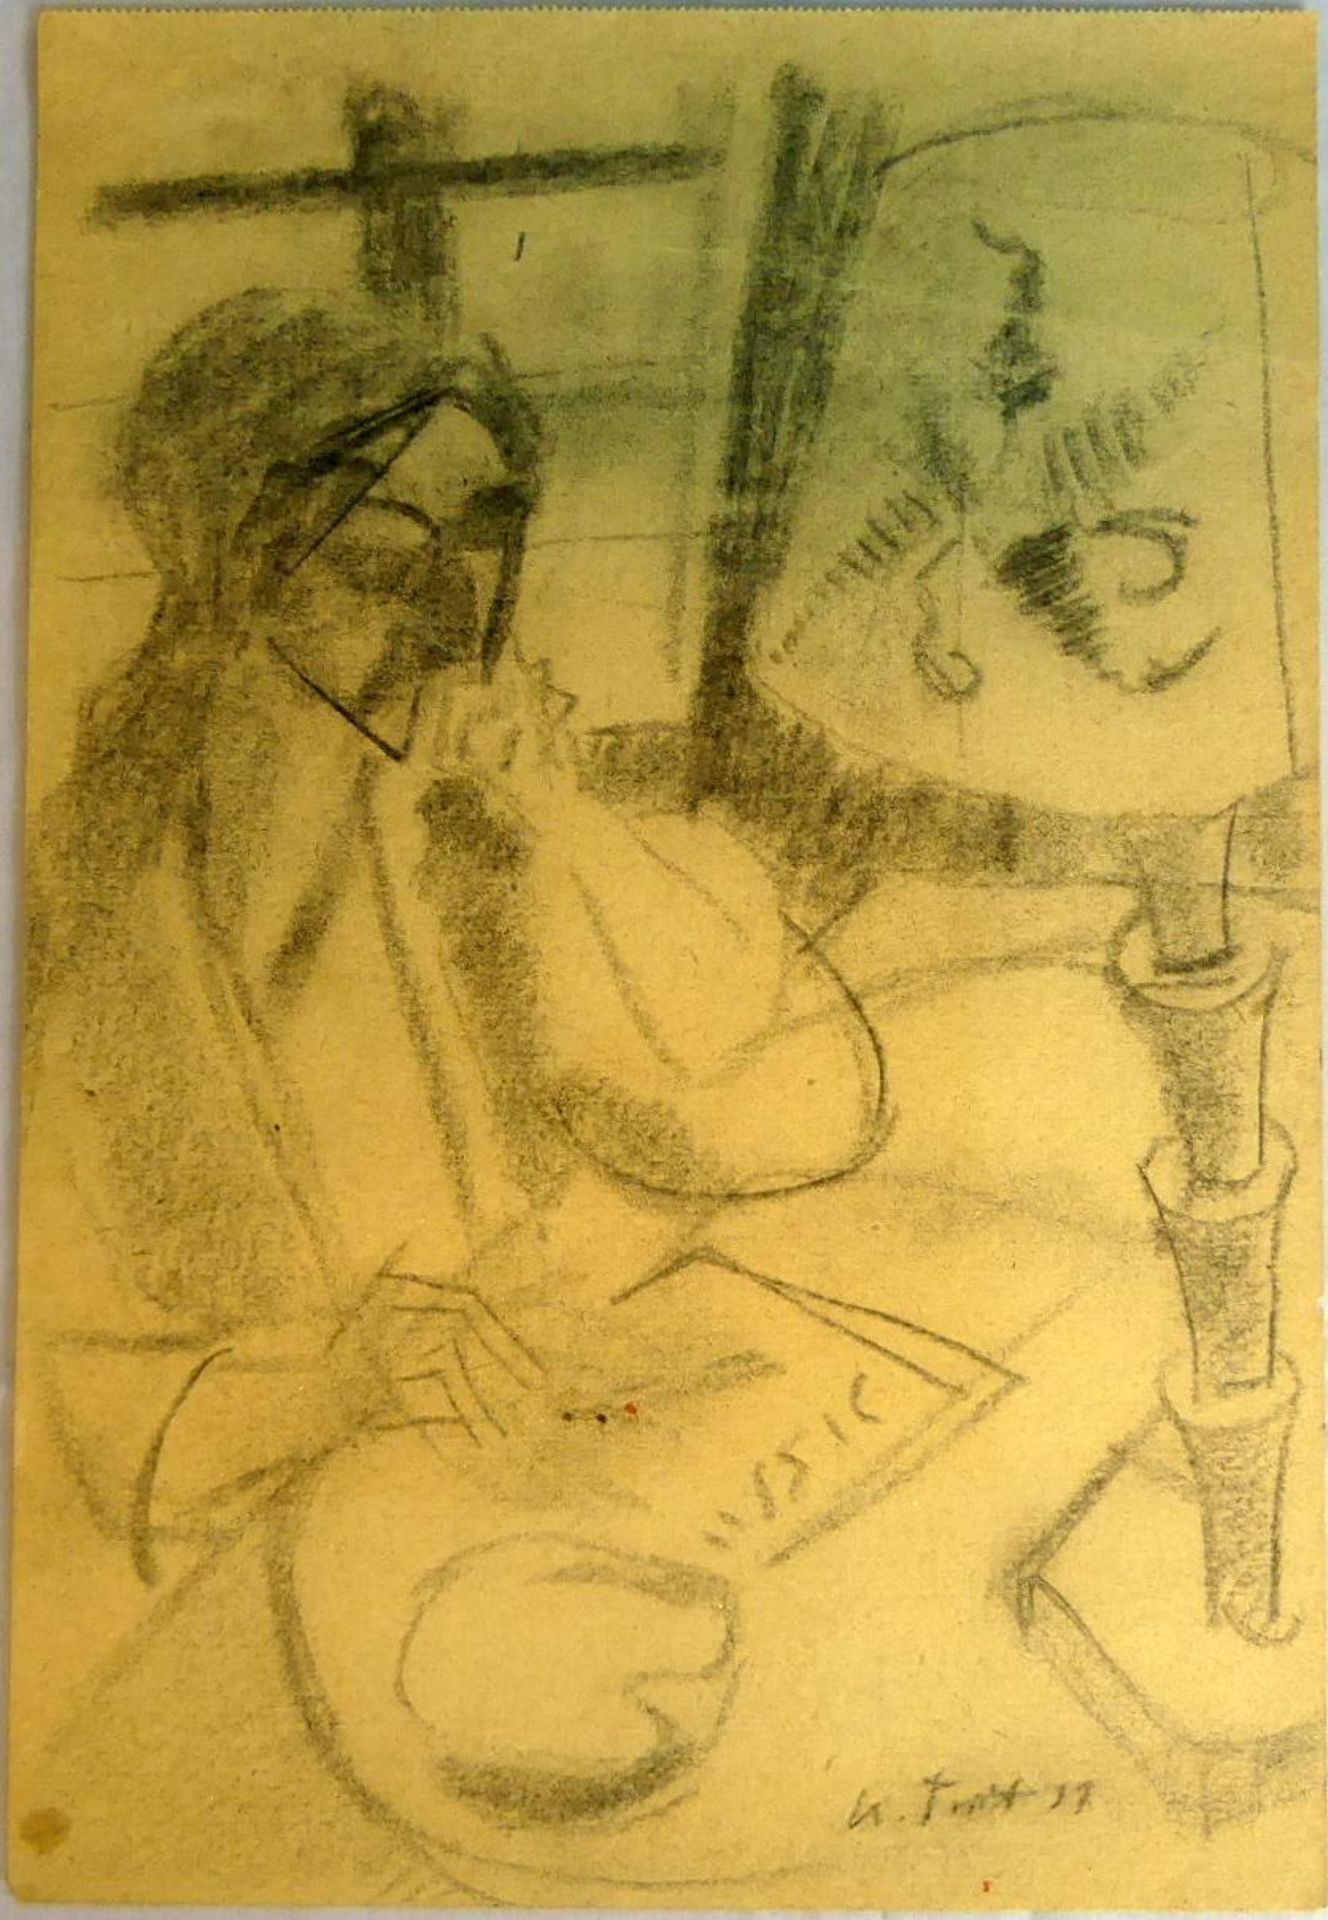 KARL TRATT (1900-1937), "Zeichnende Person", Beistift/Papier, u. re. sig.,